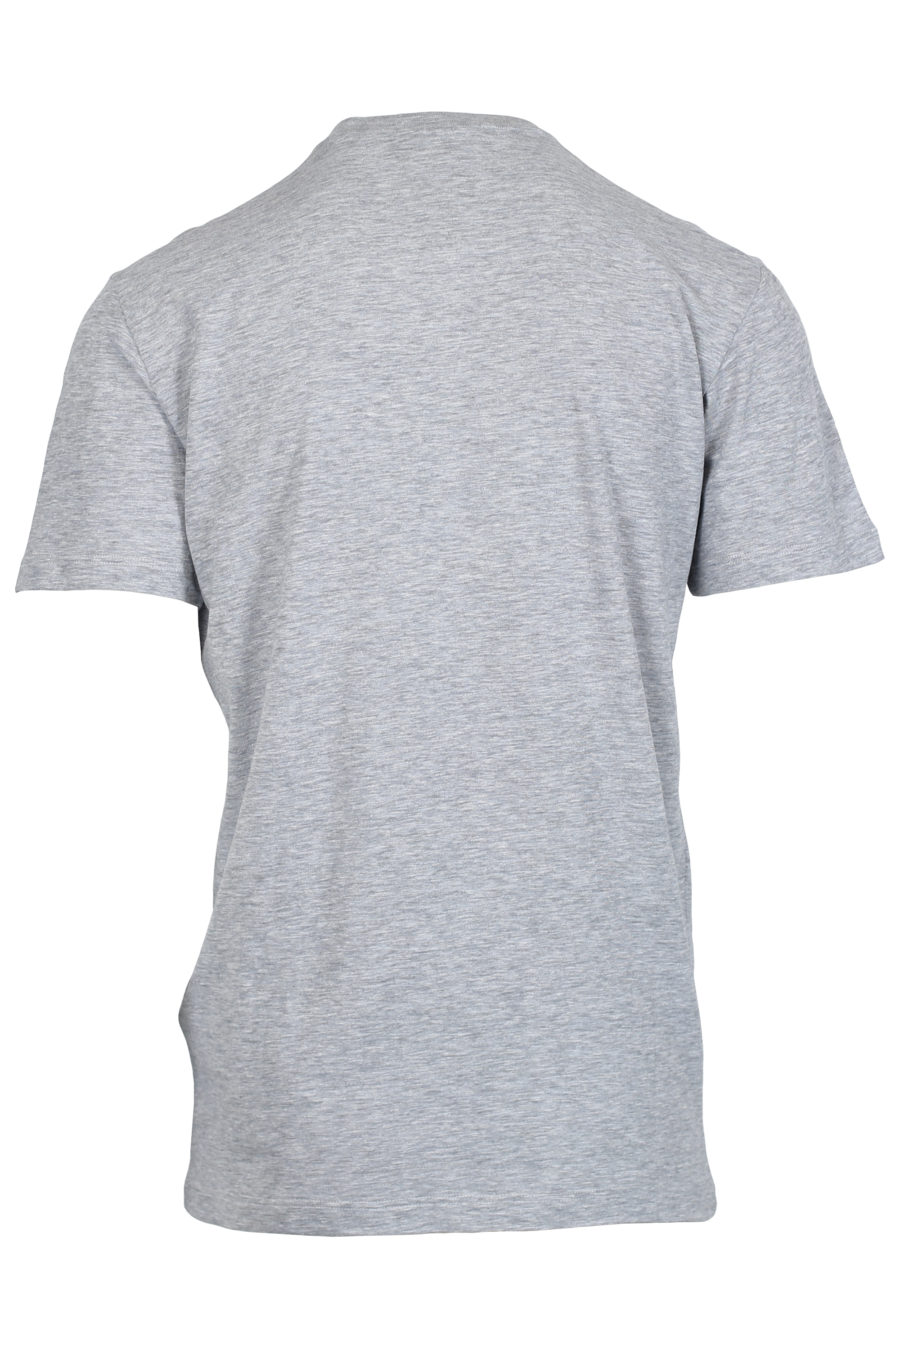 Camiseta gris con estampado bandera - IMG 2387